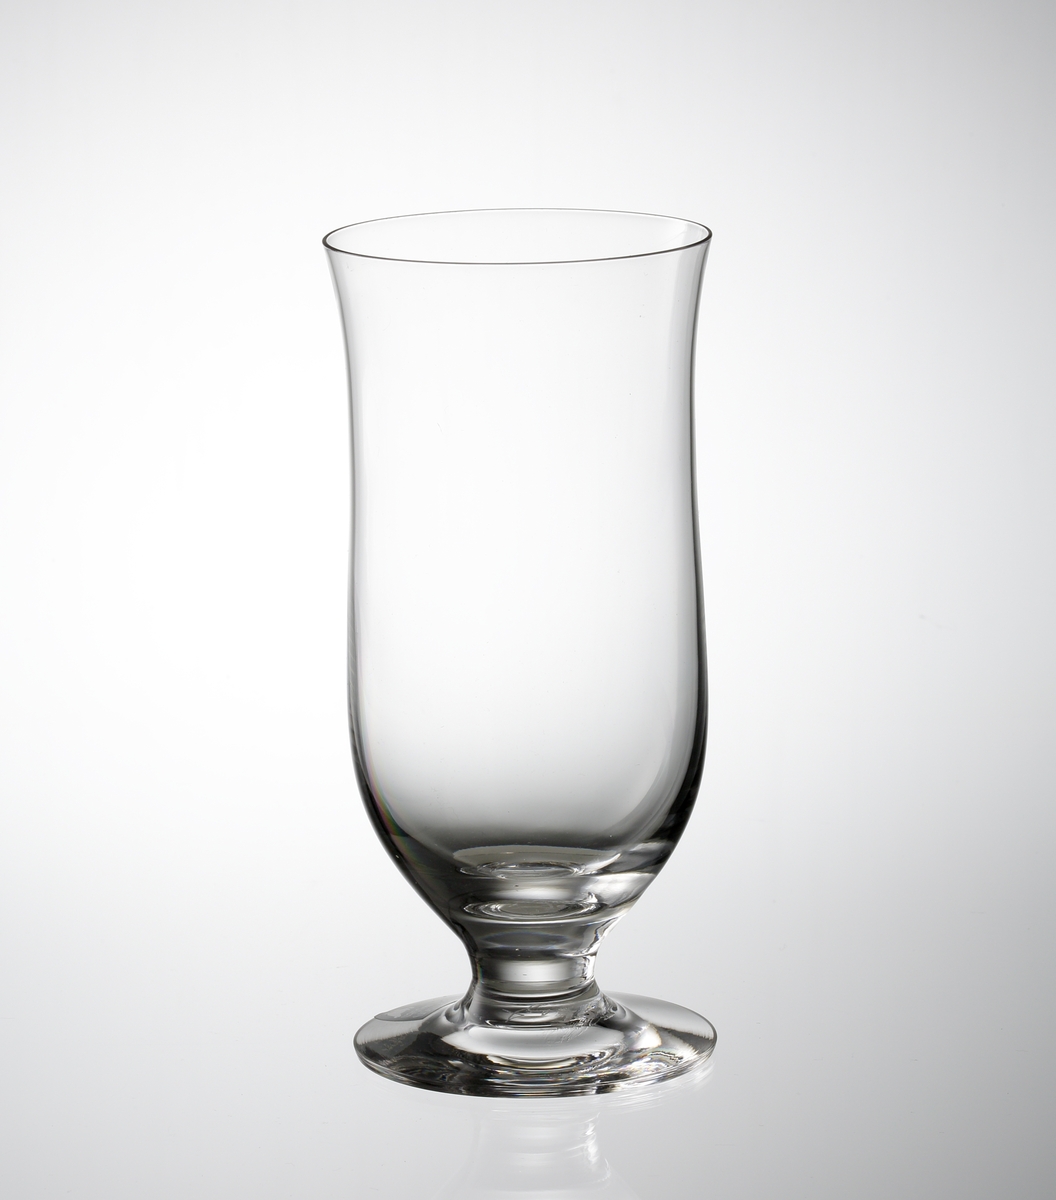 Formgivare: Gunnar Cyrén. Glaset har en slät, klockformad kupa med draget ben.

Fabriksmärke: Mörkgrå botten, vit text.